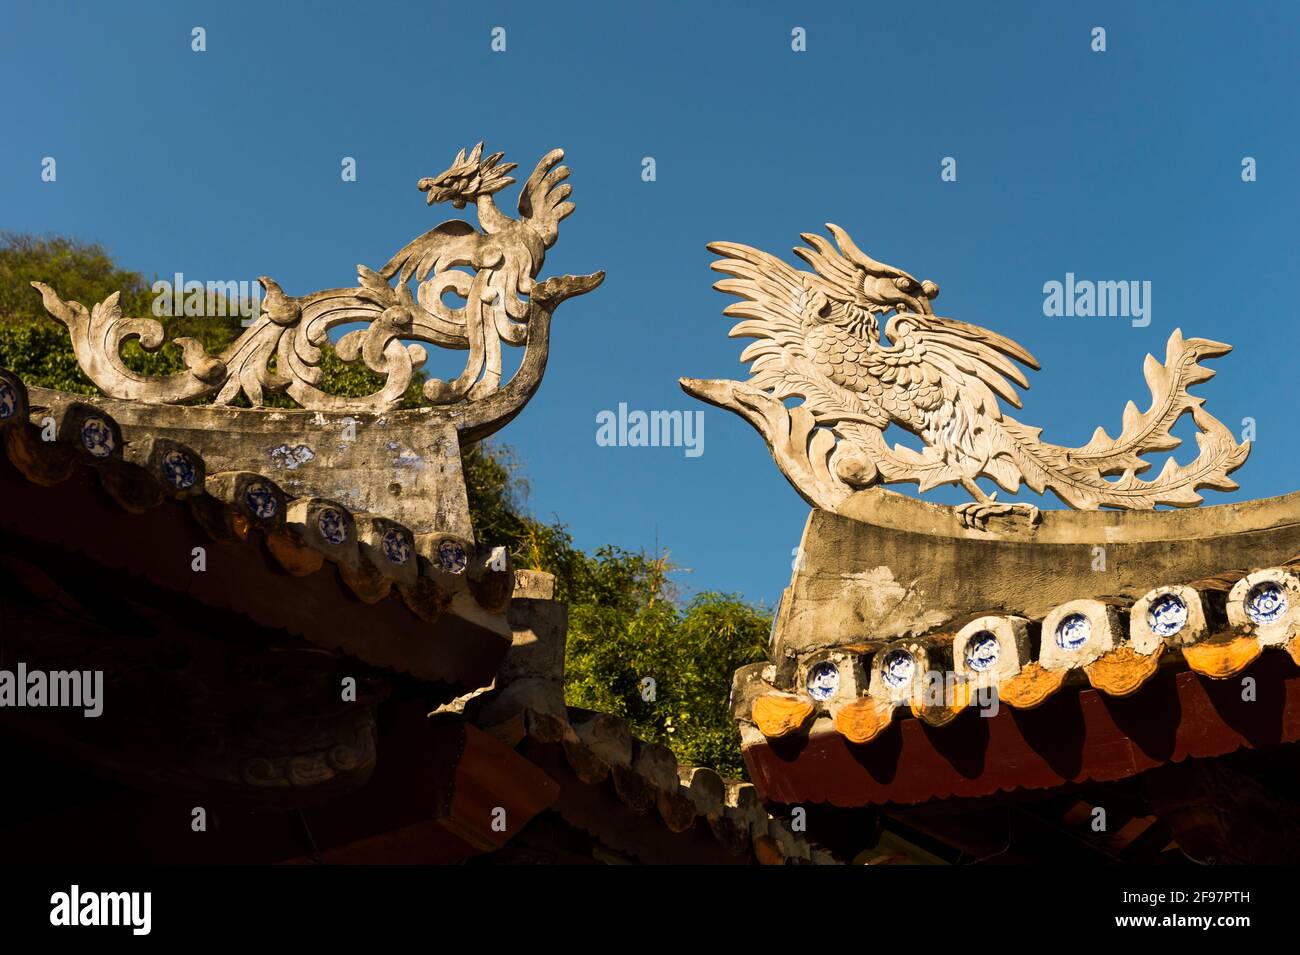 Vietnam, da Nang, montagne di marmo, tetto, dettaglio, drago, Foto Stock